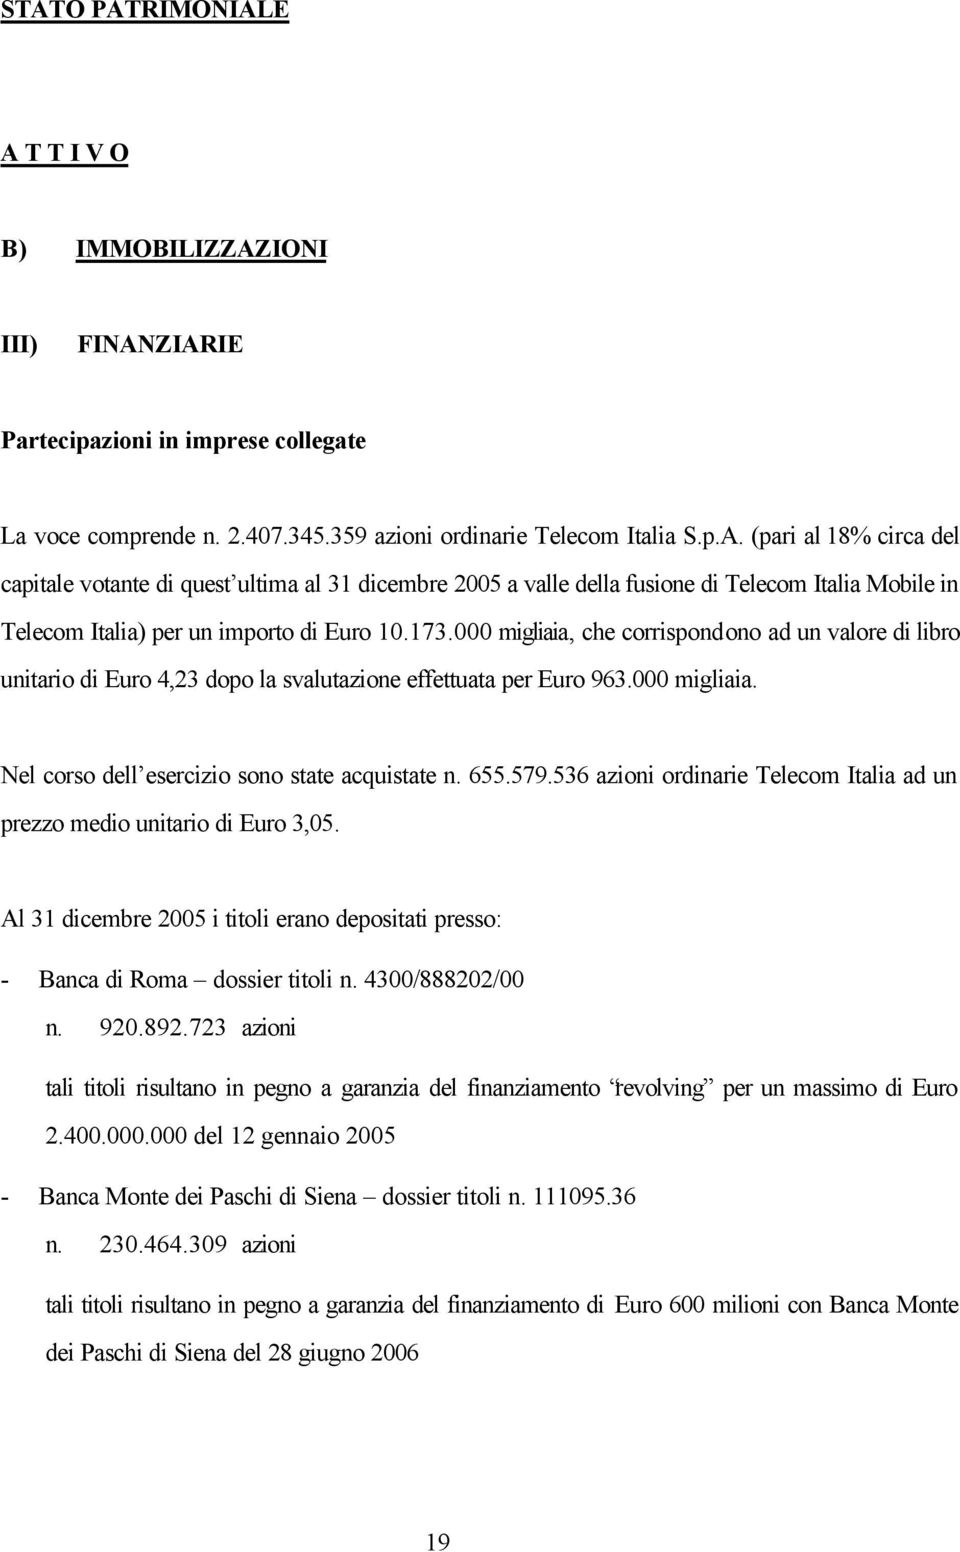 536 azioni ordinarie Telecom Italia ad un prezzo medio unitario di Euro 3,05. Al 31 dicembre 2005 i titoli erano depositati presso: - Banca di Roma dossier titoli n. 4300/888202/00 n. 920.892.